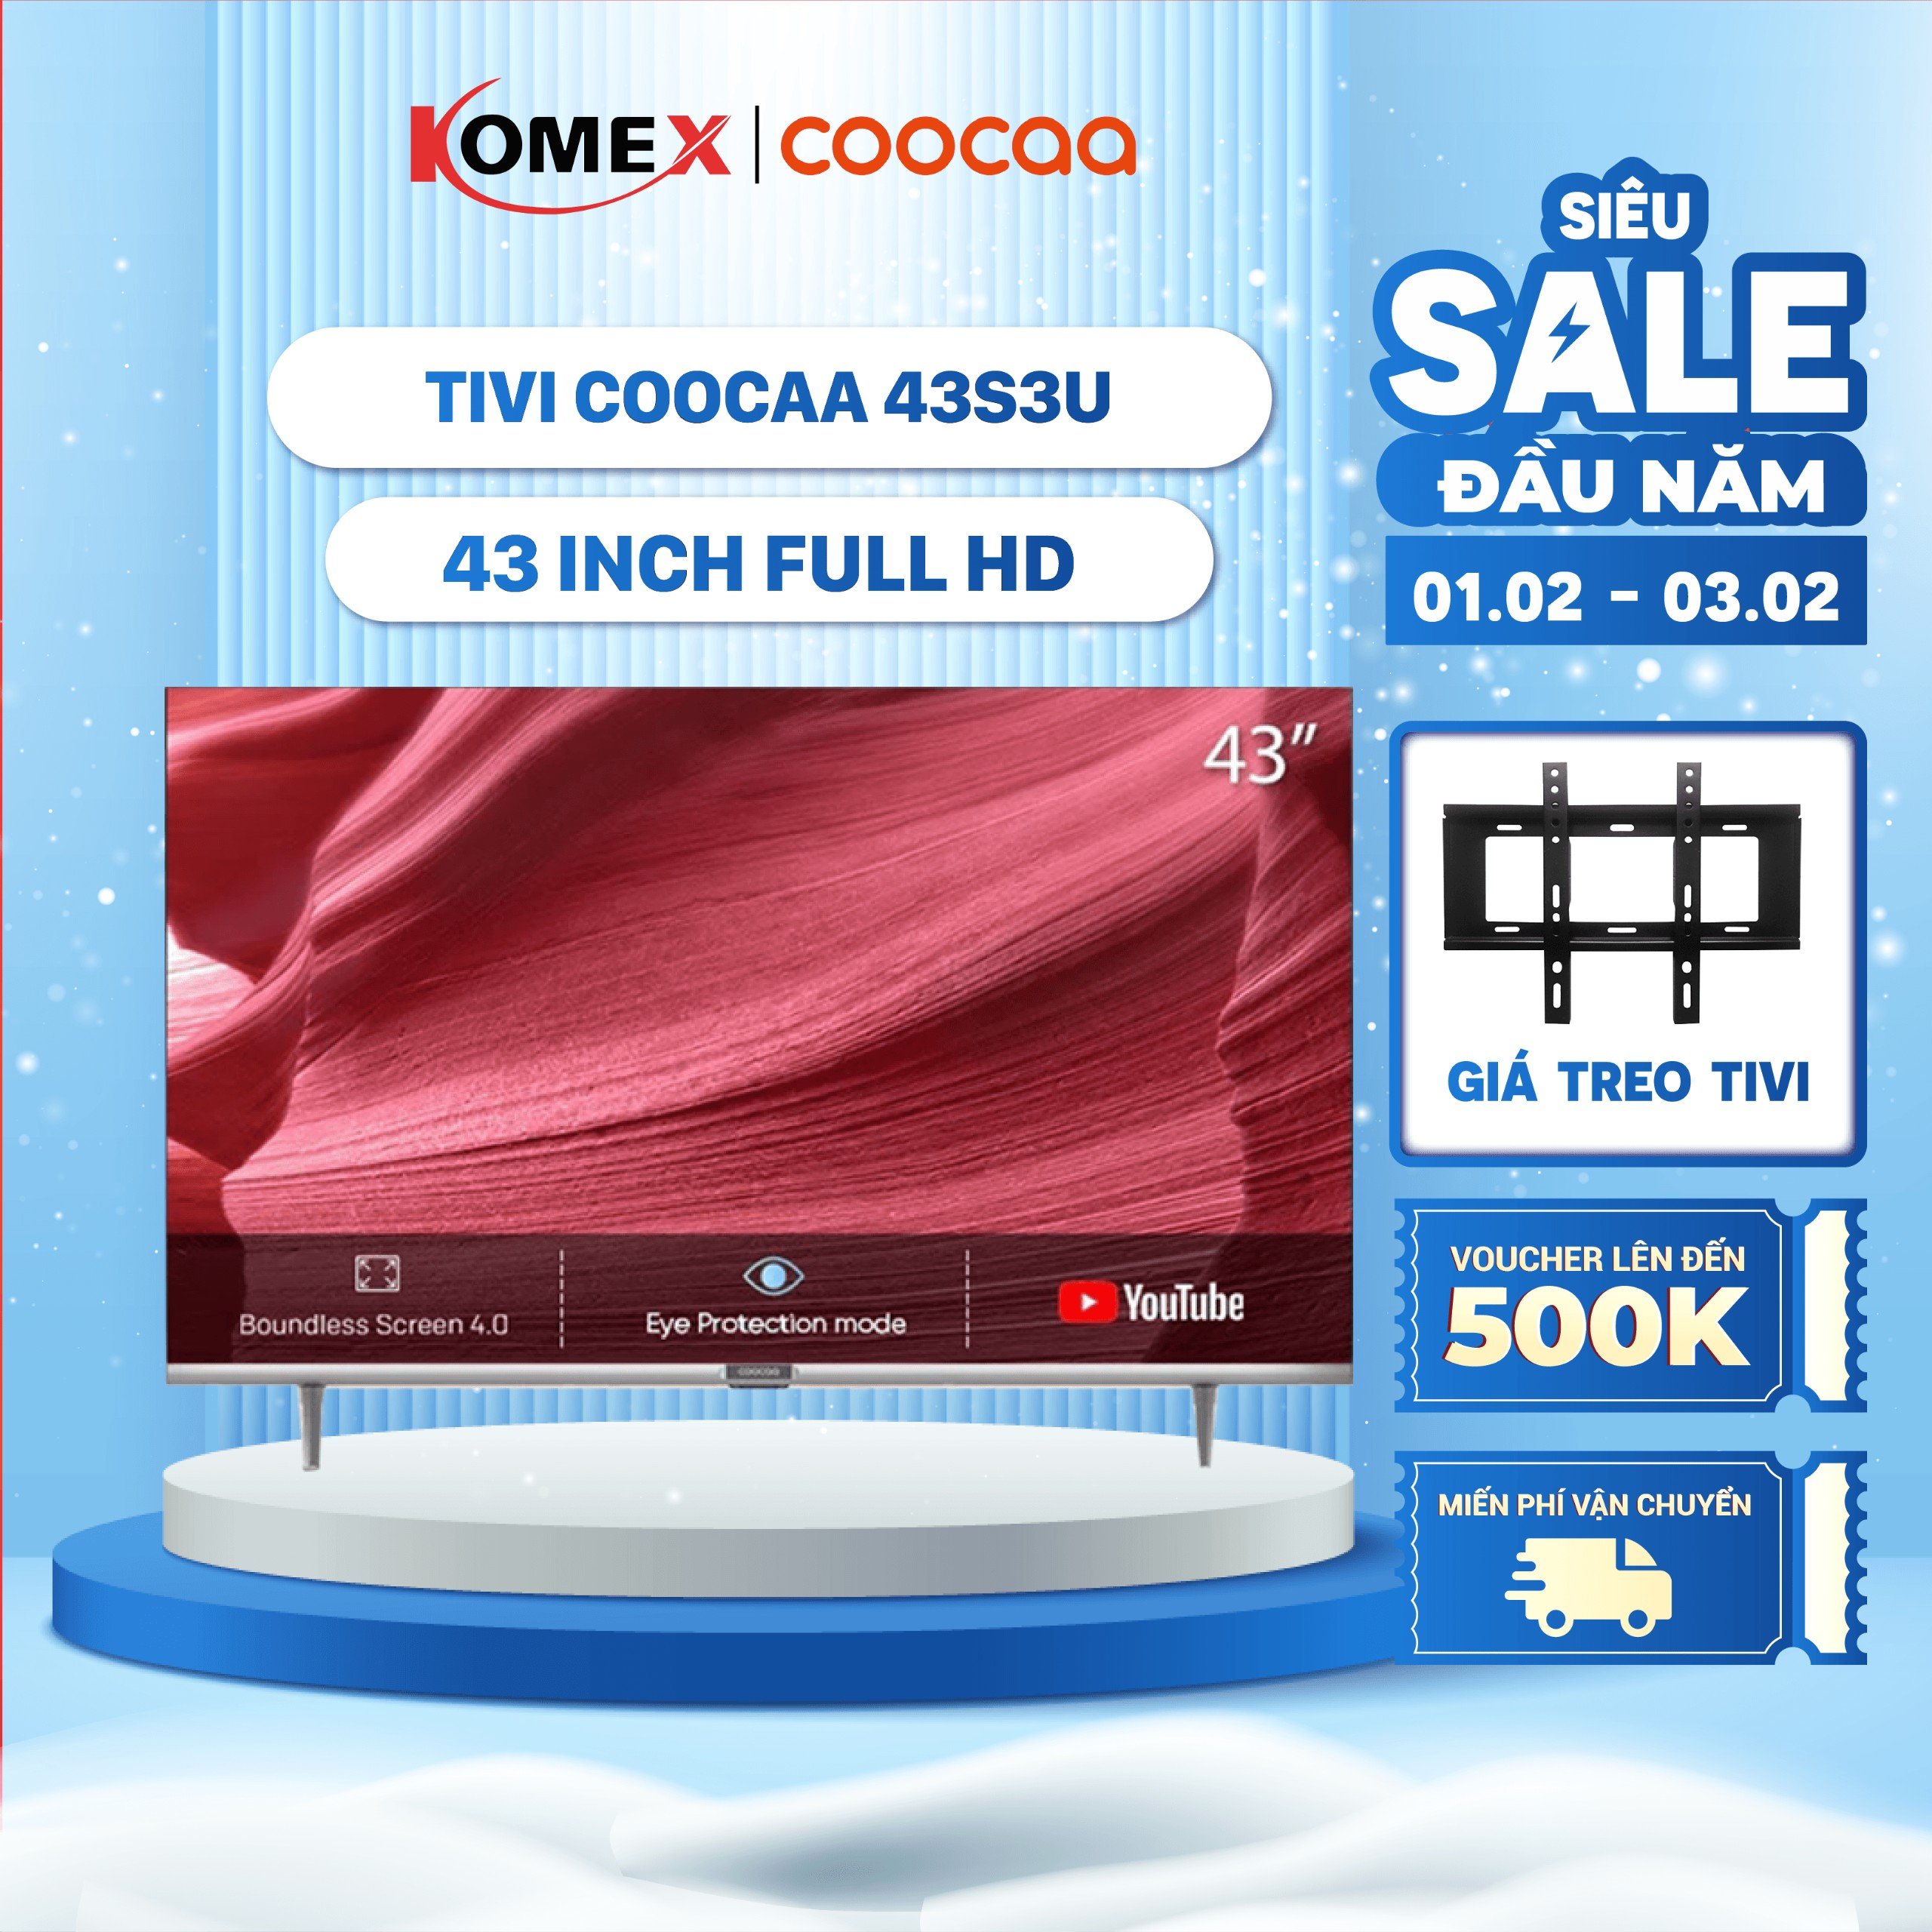 Tivi Coocaa 43 Inch Model 43S3U Smart tivi Full HD kết nối wifi Mỏng nhẹ Siêu chất lượng Đồng kiểm Đổi trả 30 ngày Bảo hành 24 tháng - Komex